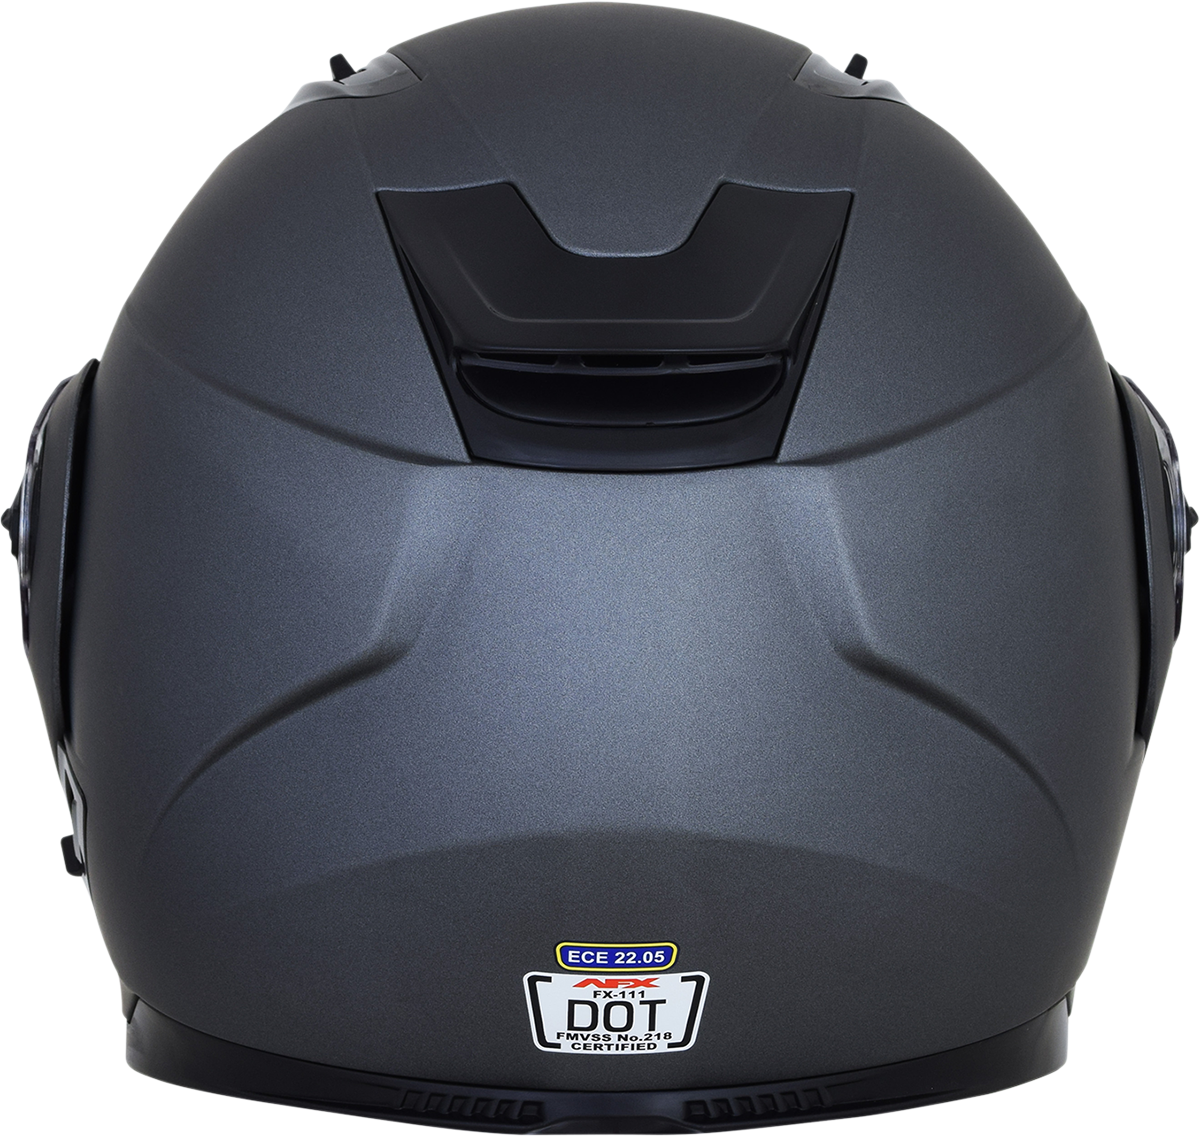 AFX FX-111 Helmet - Frost Gray - XL 0100-1792